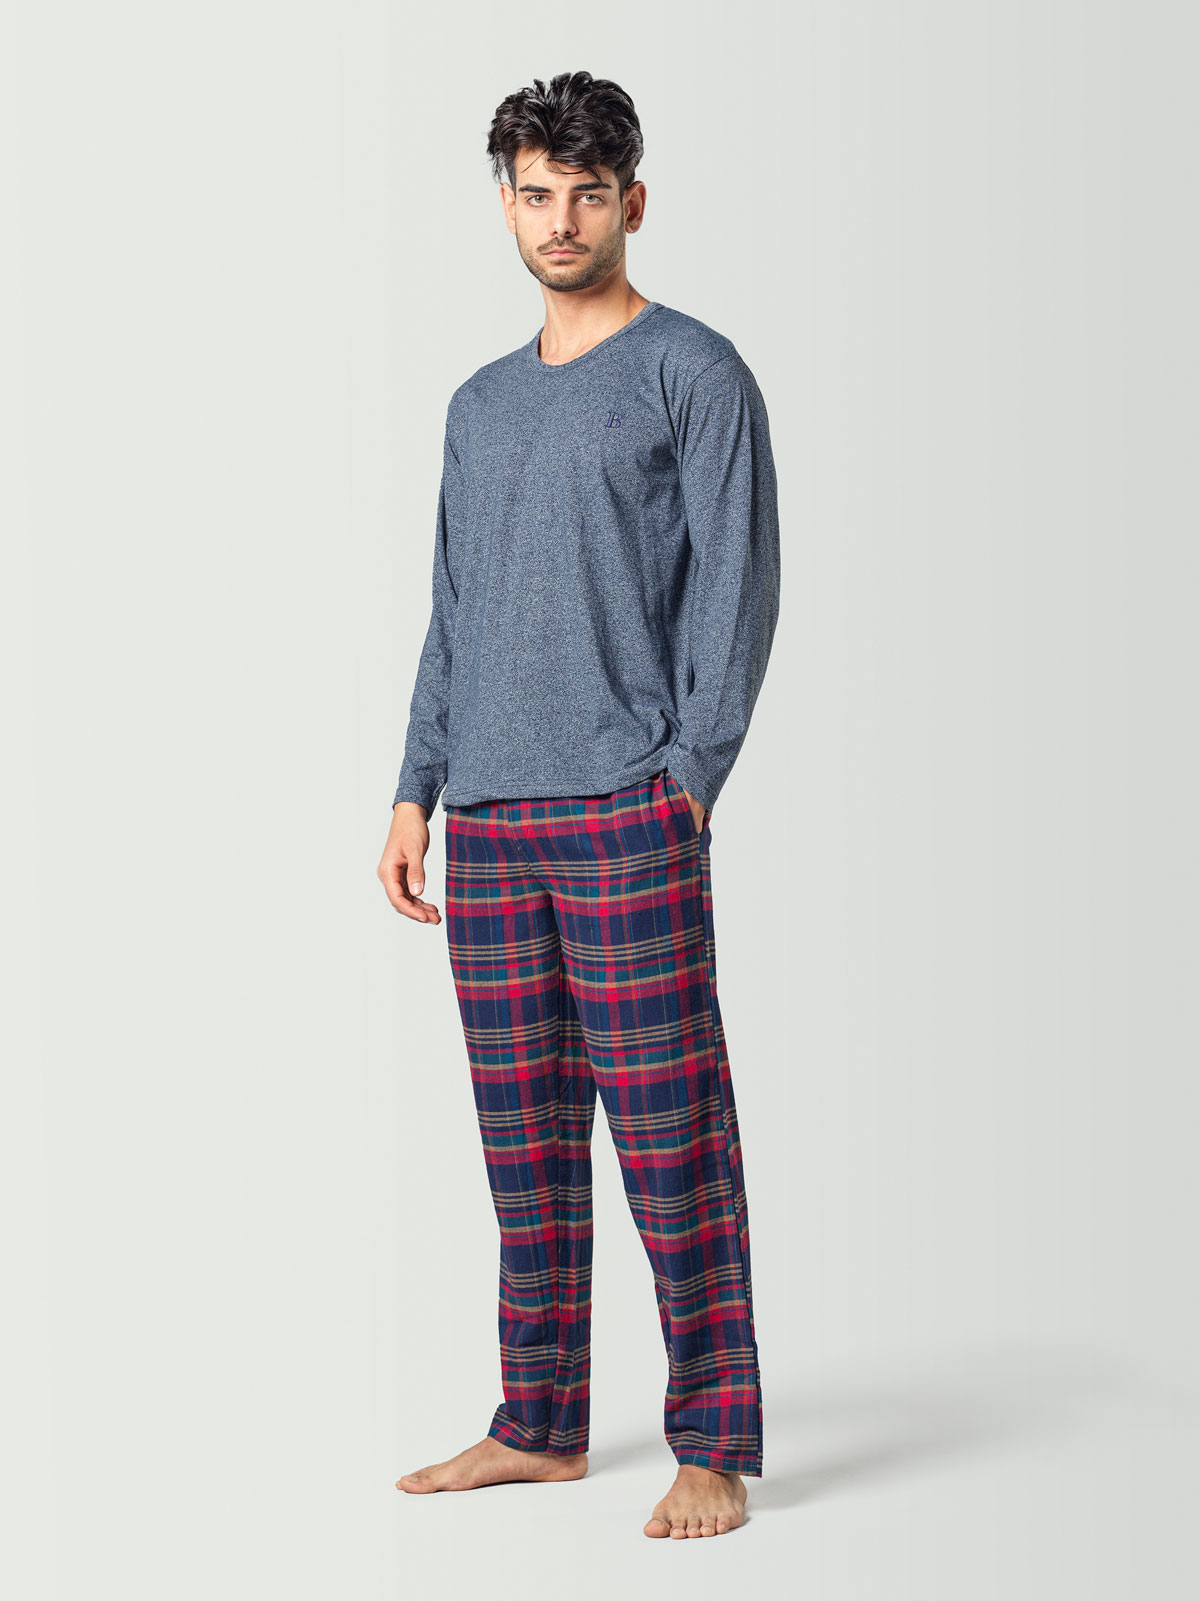 Pijama para hombre con camiseta de manga larga azul y pantalón a cuadros azul y rojo